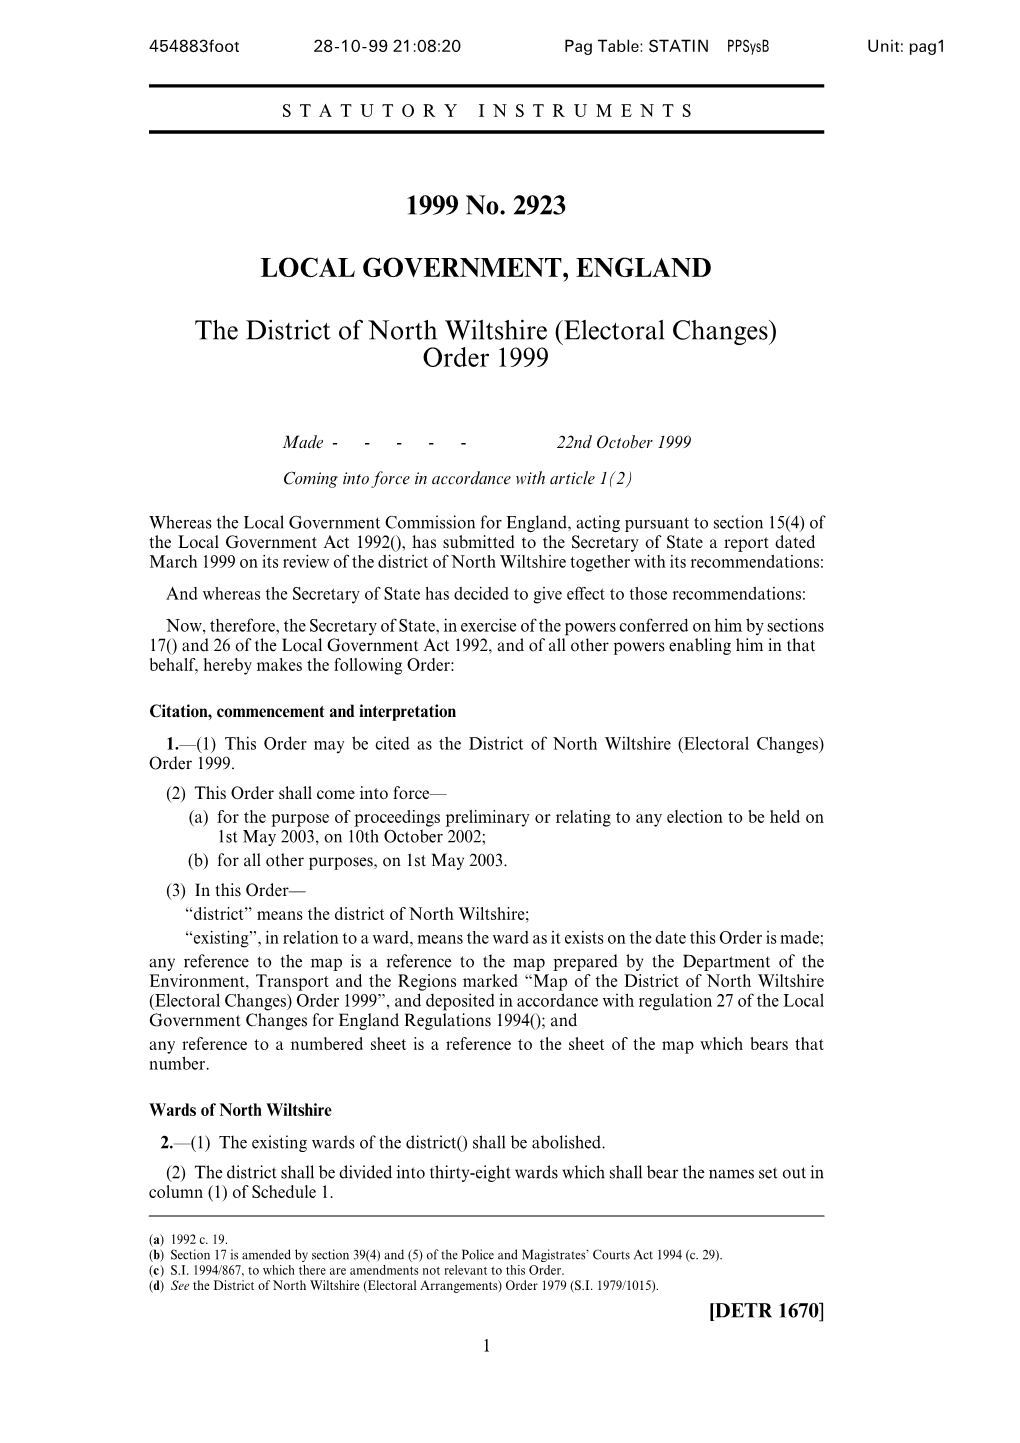 Electoral Changes) Order 1999